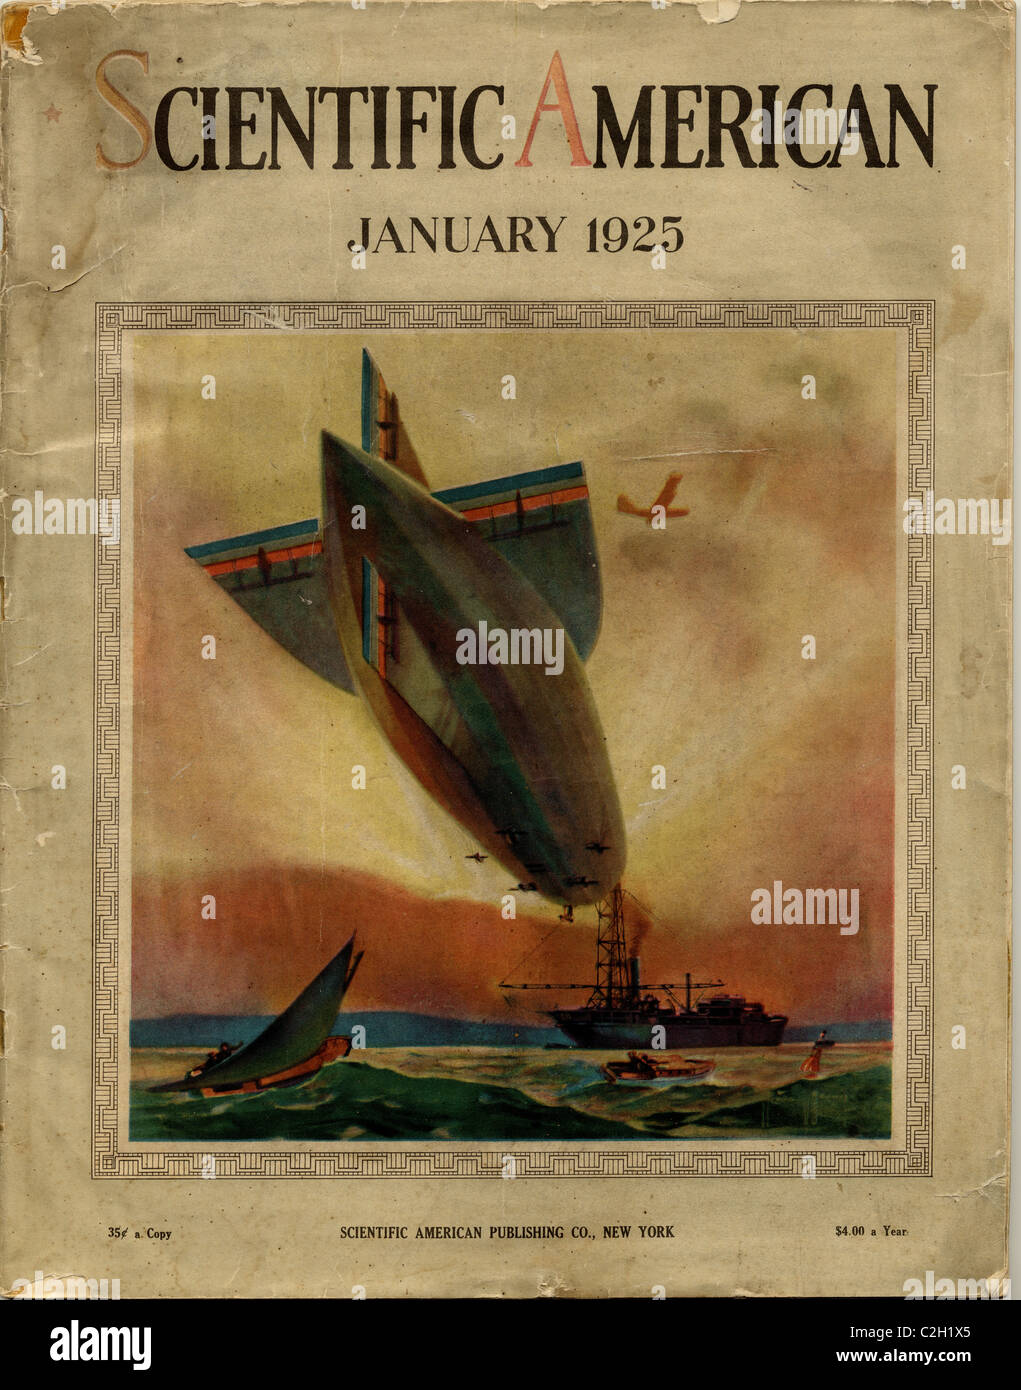 Scientific American abarcan desde 1925 mostrando un dirigible acoplarla a un buque en el mar. Foto de stock